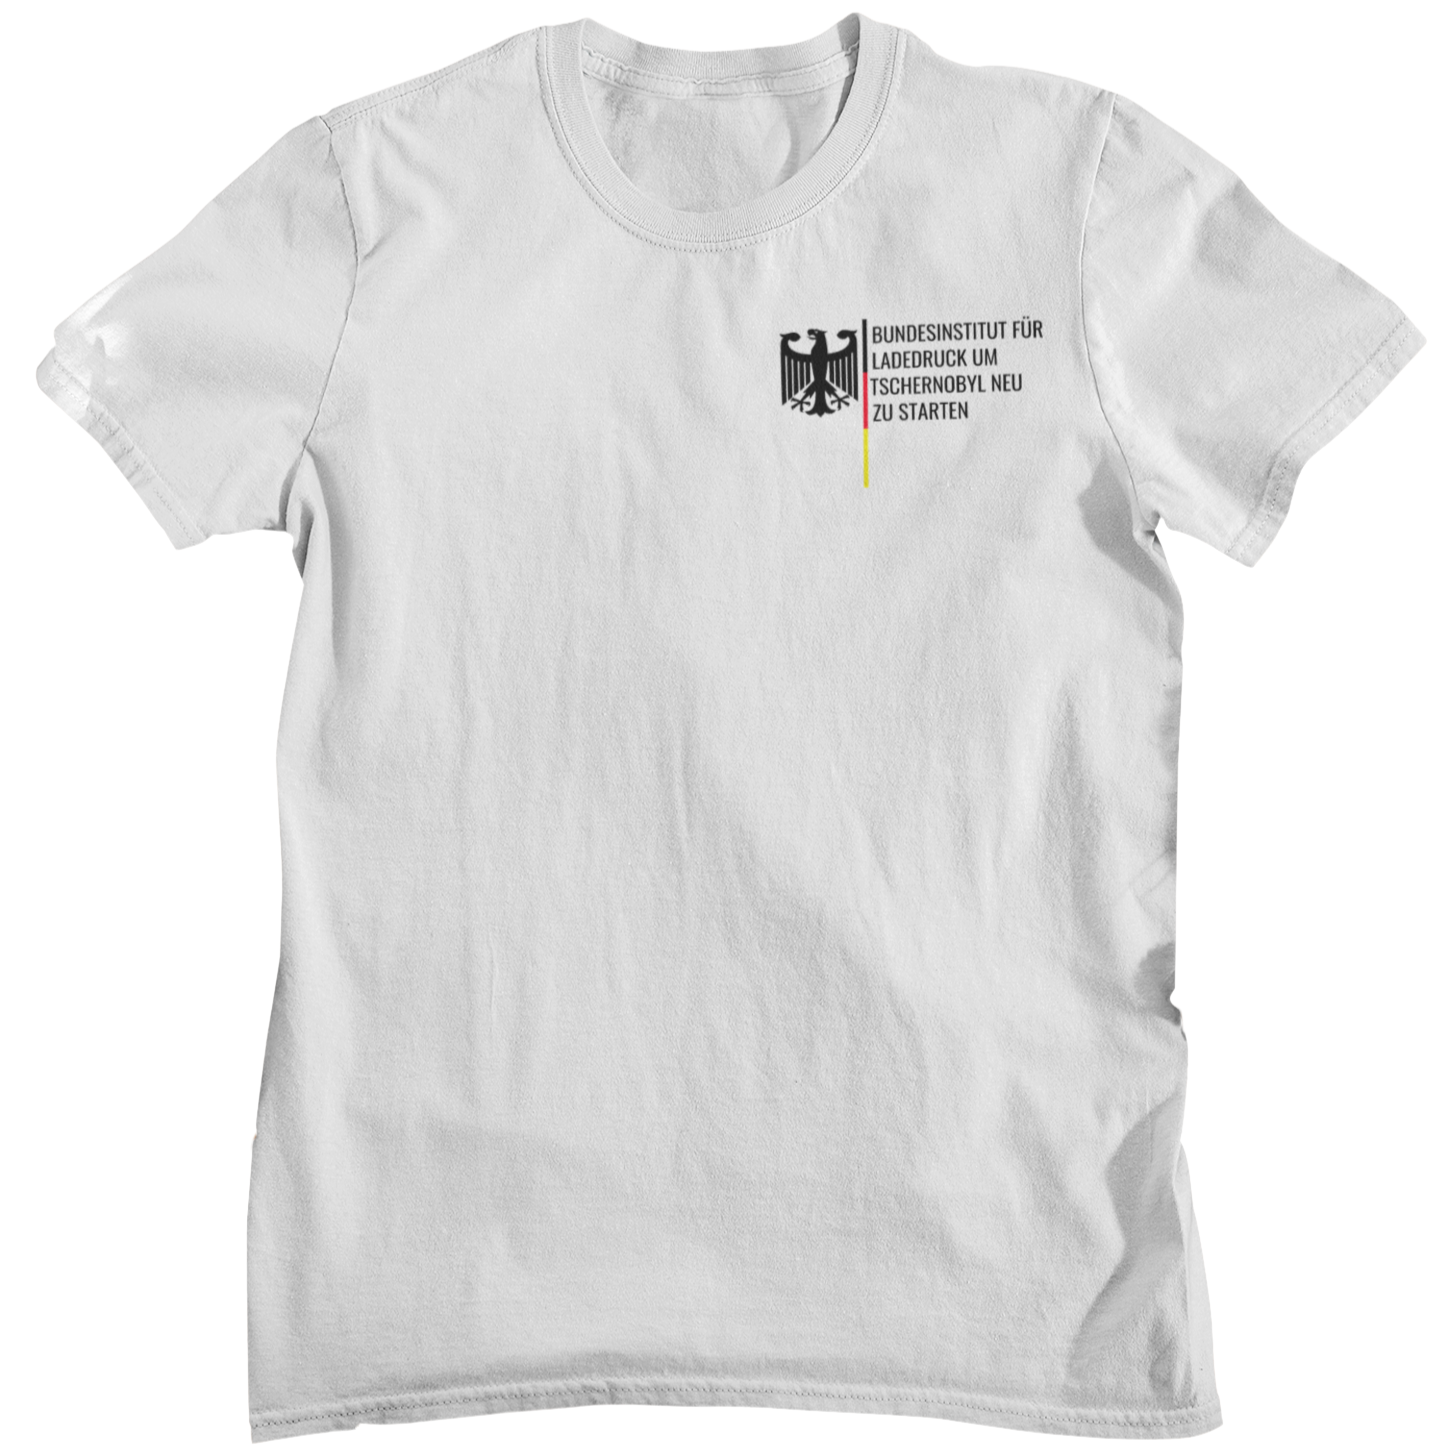 Bundesinstitut Tschernobyl  - Unisex Shirt